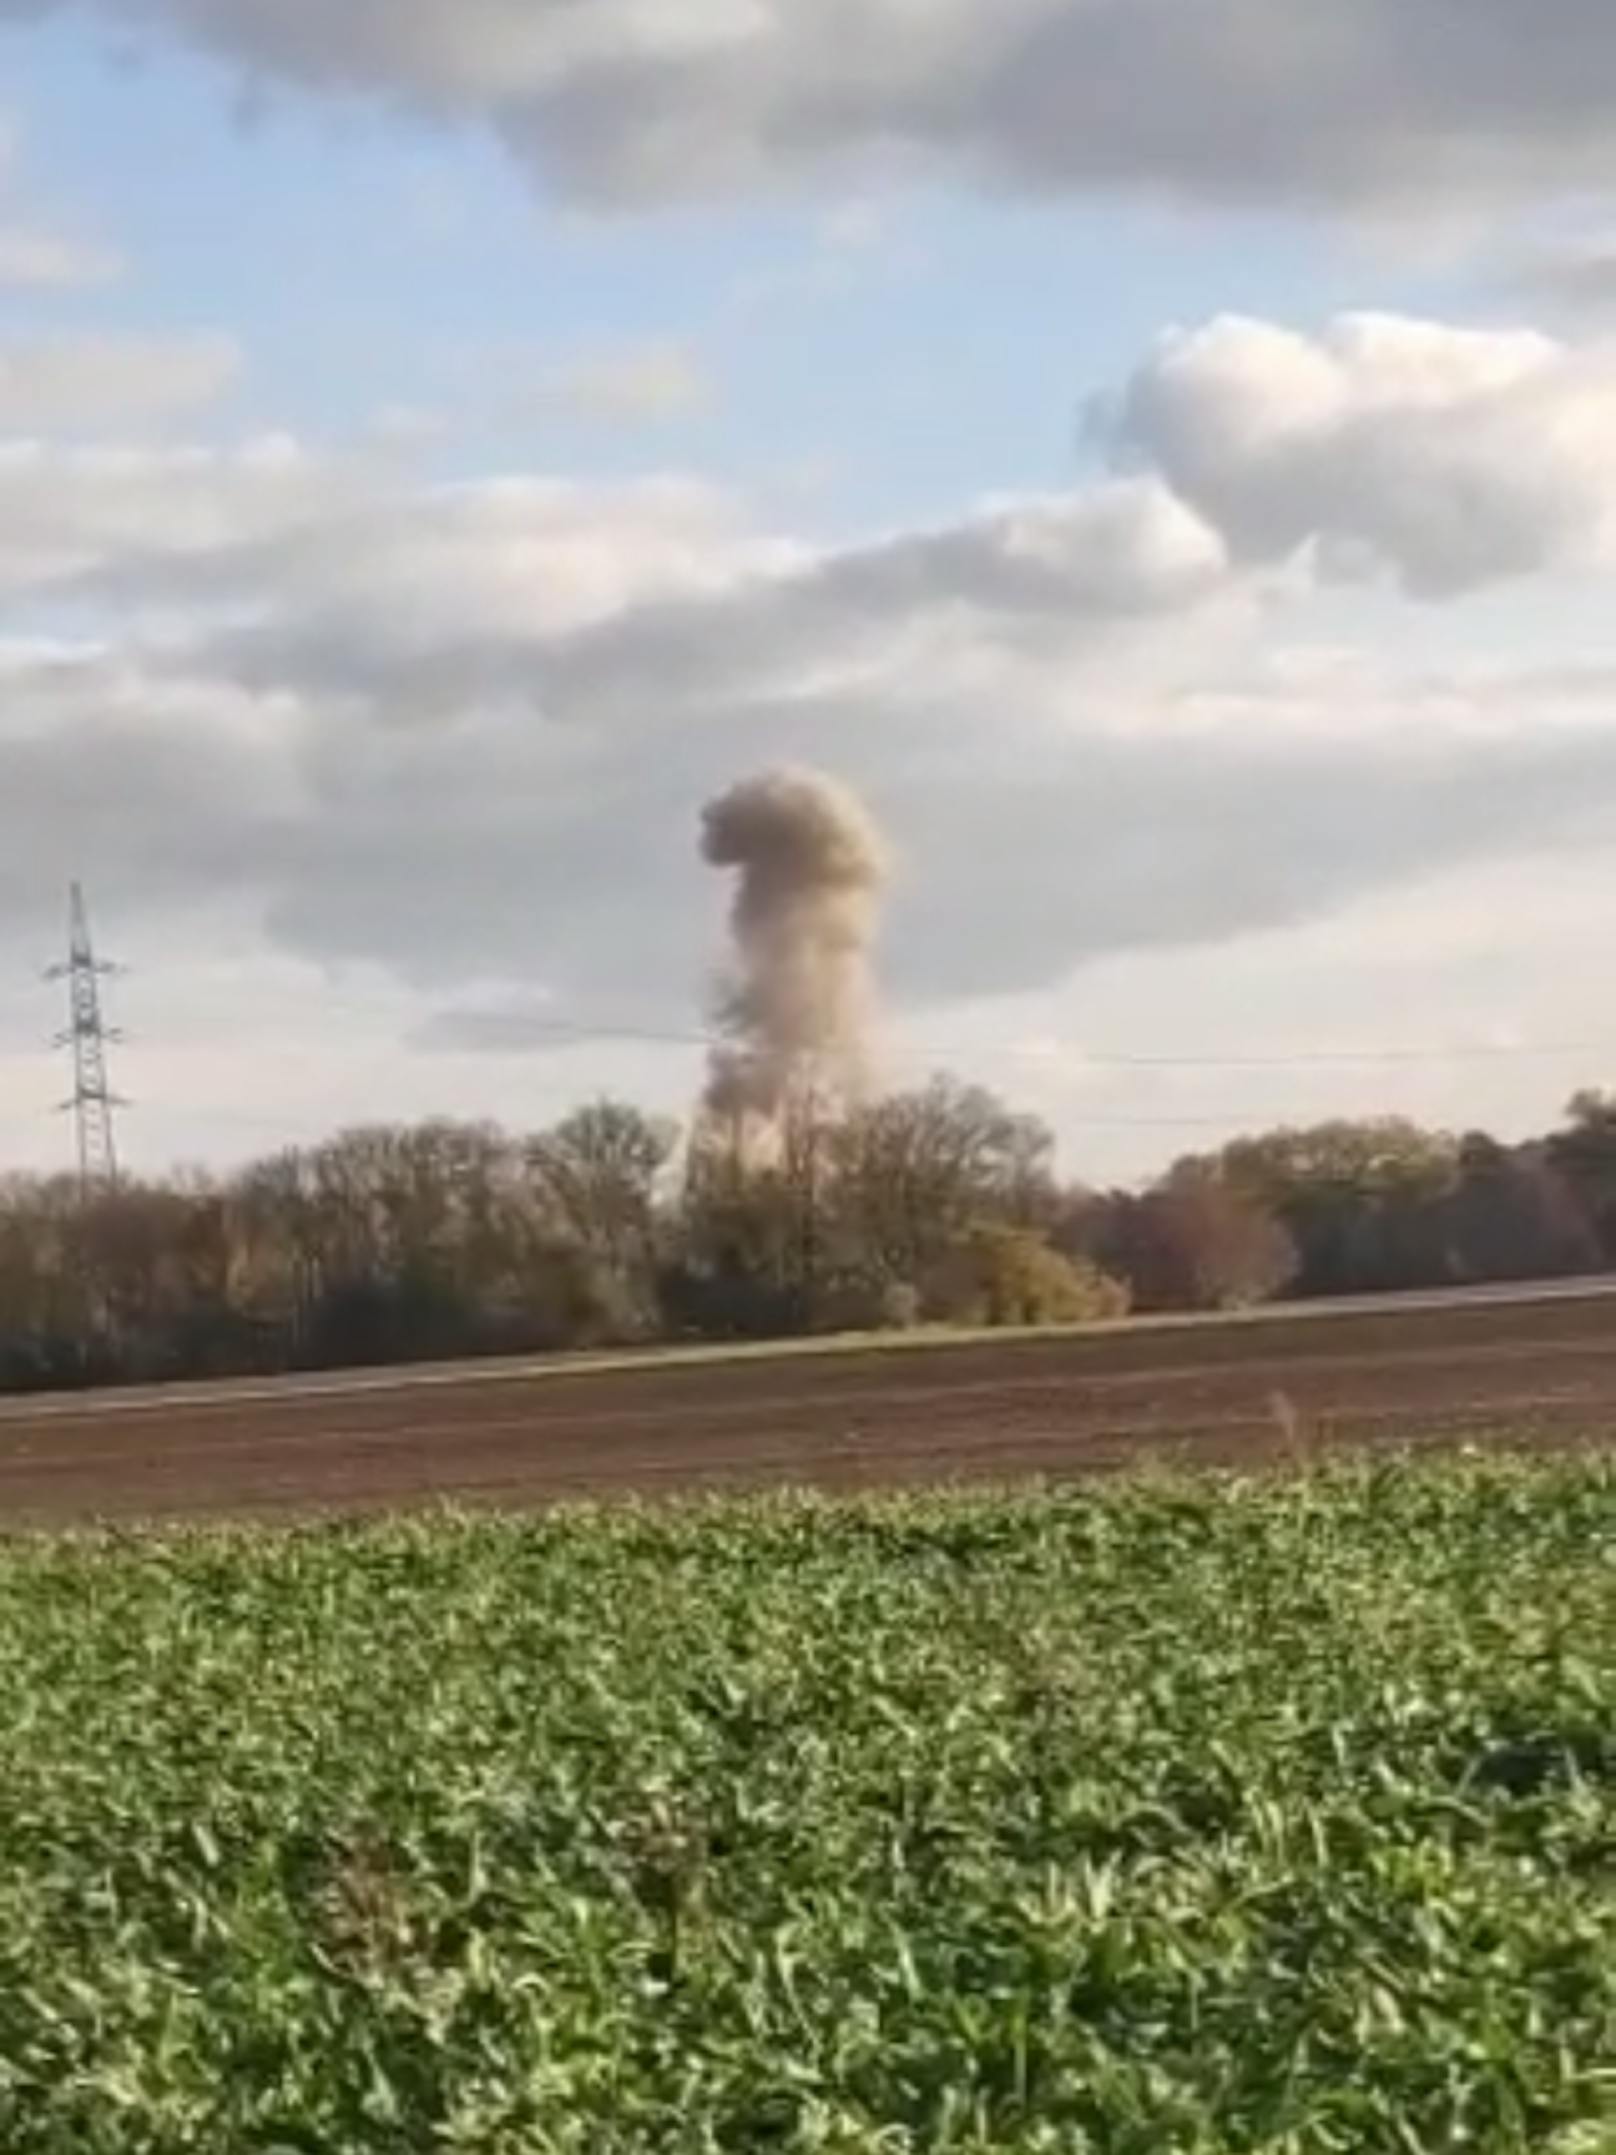 Bild 26: Die Explosion war kilometerweit zu sehen – <a href="https://www.heute.at/s/bundesheer-sprengt-fliegerbombe-in-wiener-donaustadt-100172521">Weiterlesen &gt;&gt;&gt;</a>